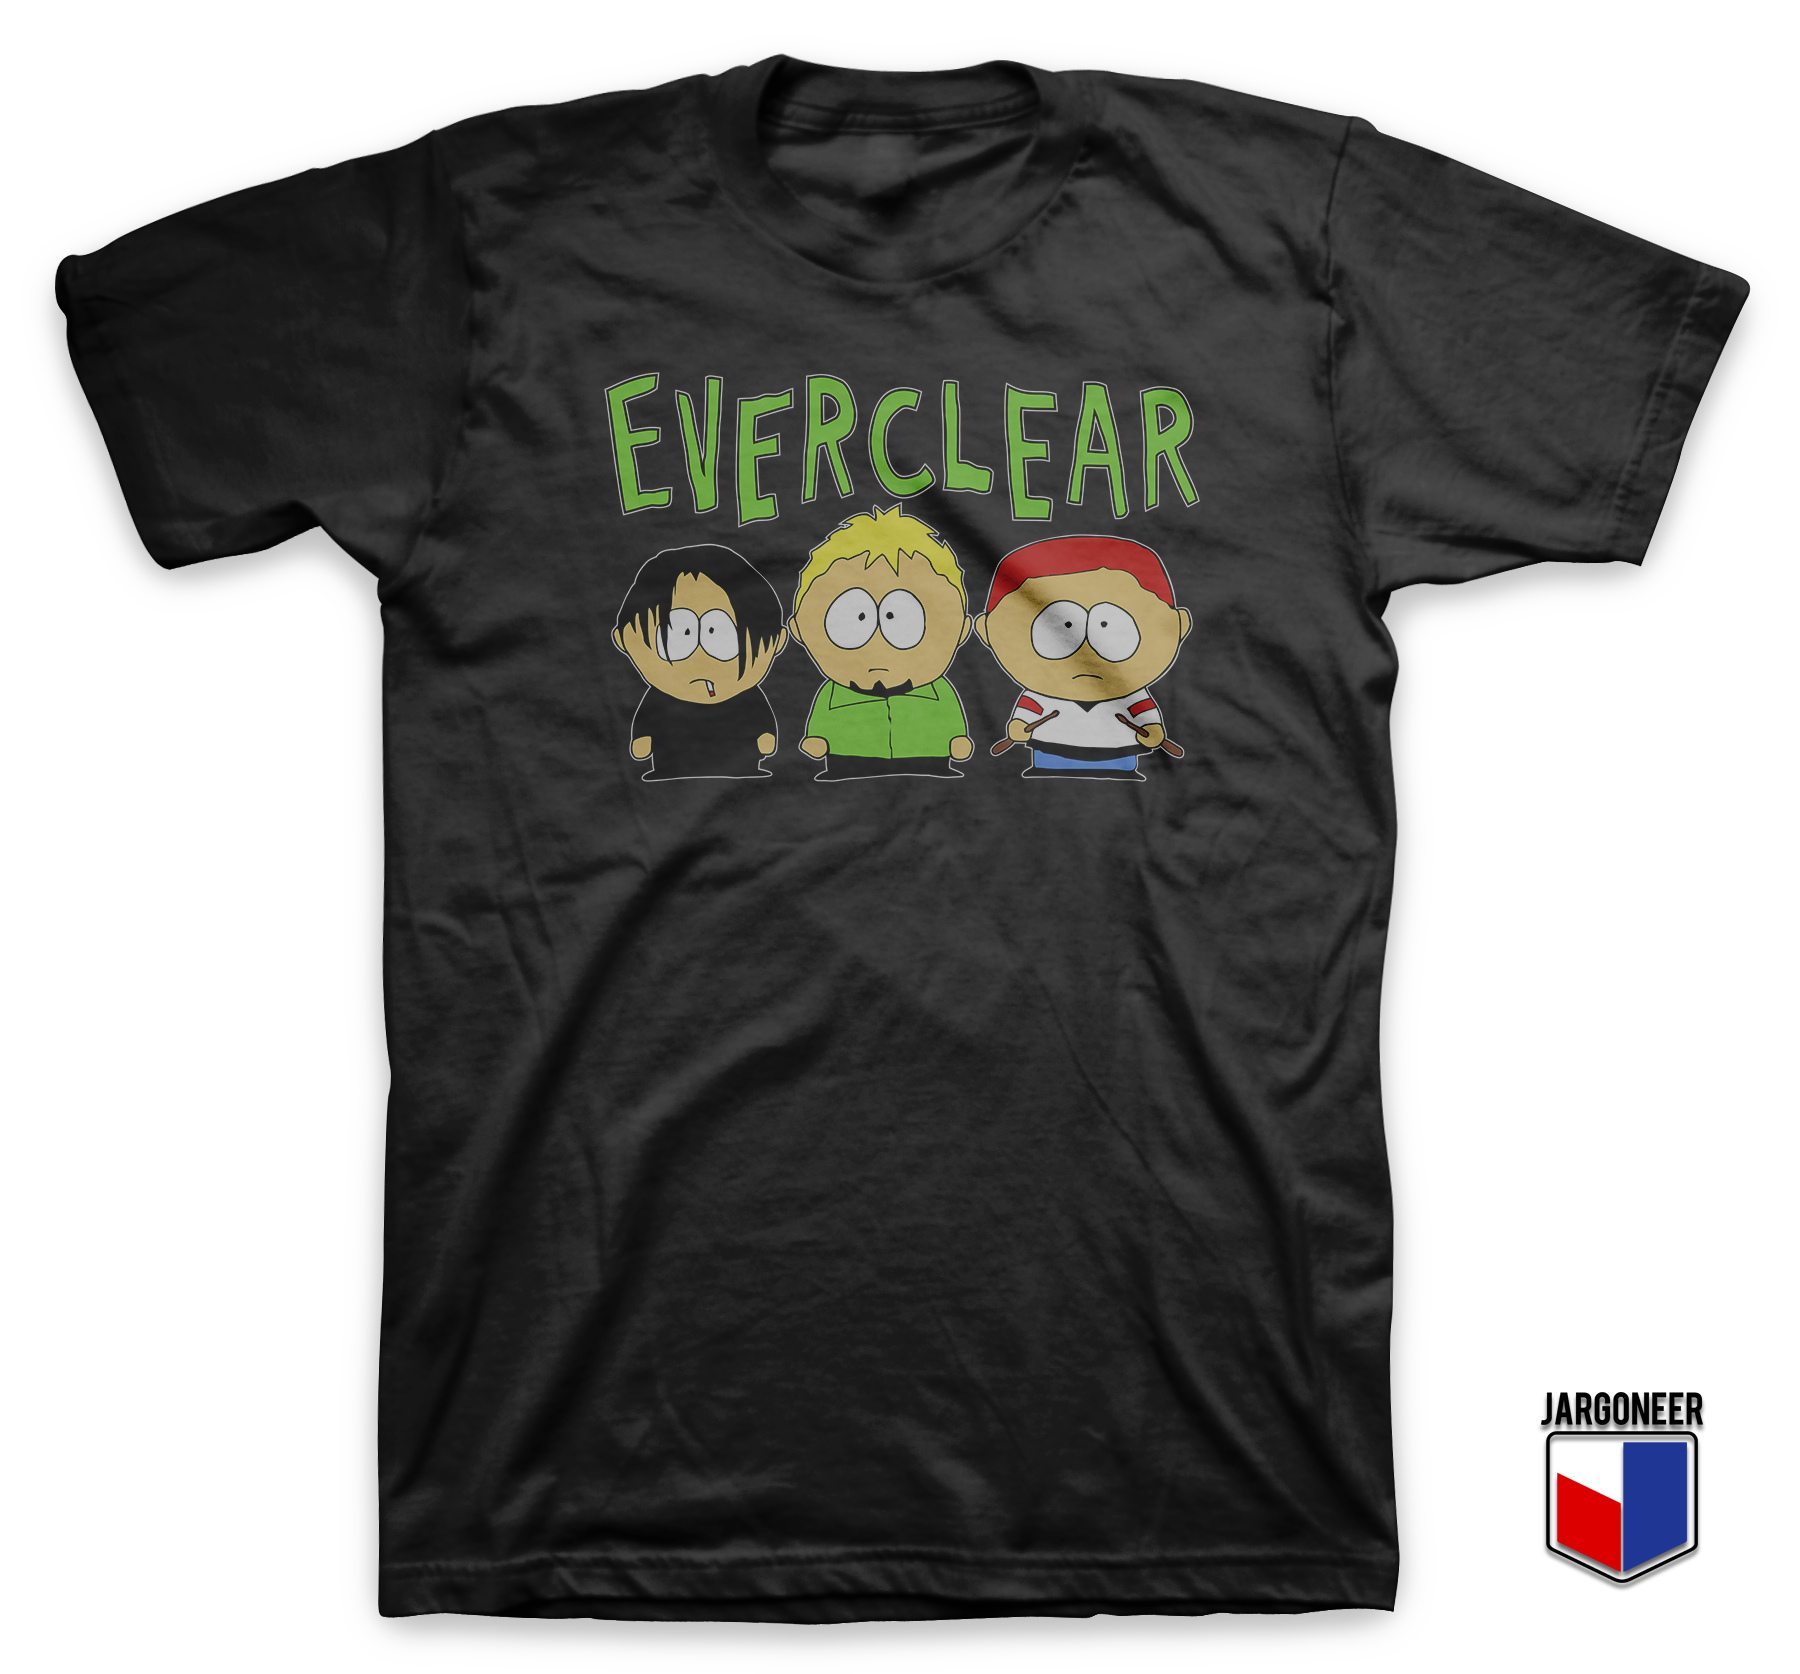 Everclear South Park Black T Shirt - Shop Unique Graphic Cool Shirt Designs